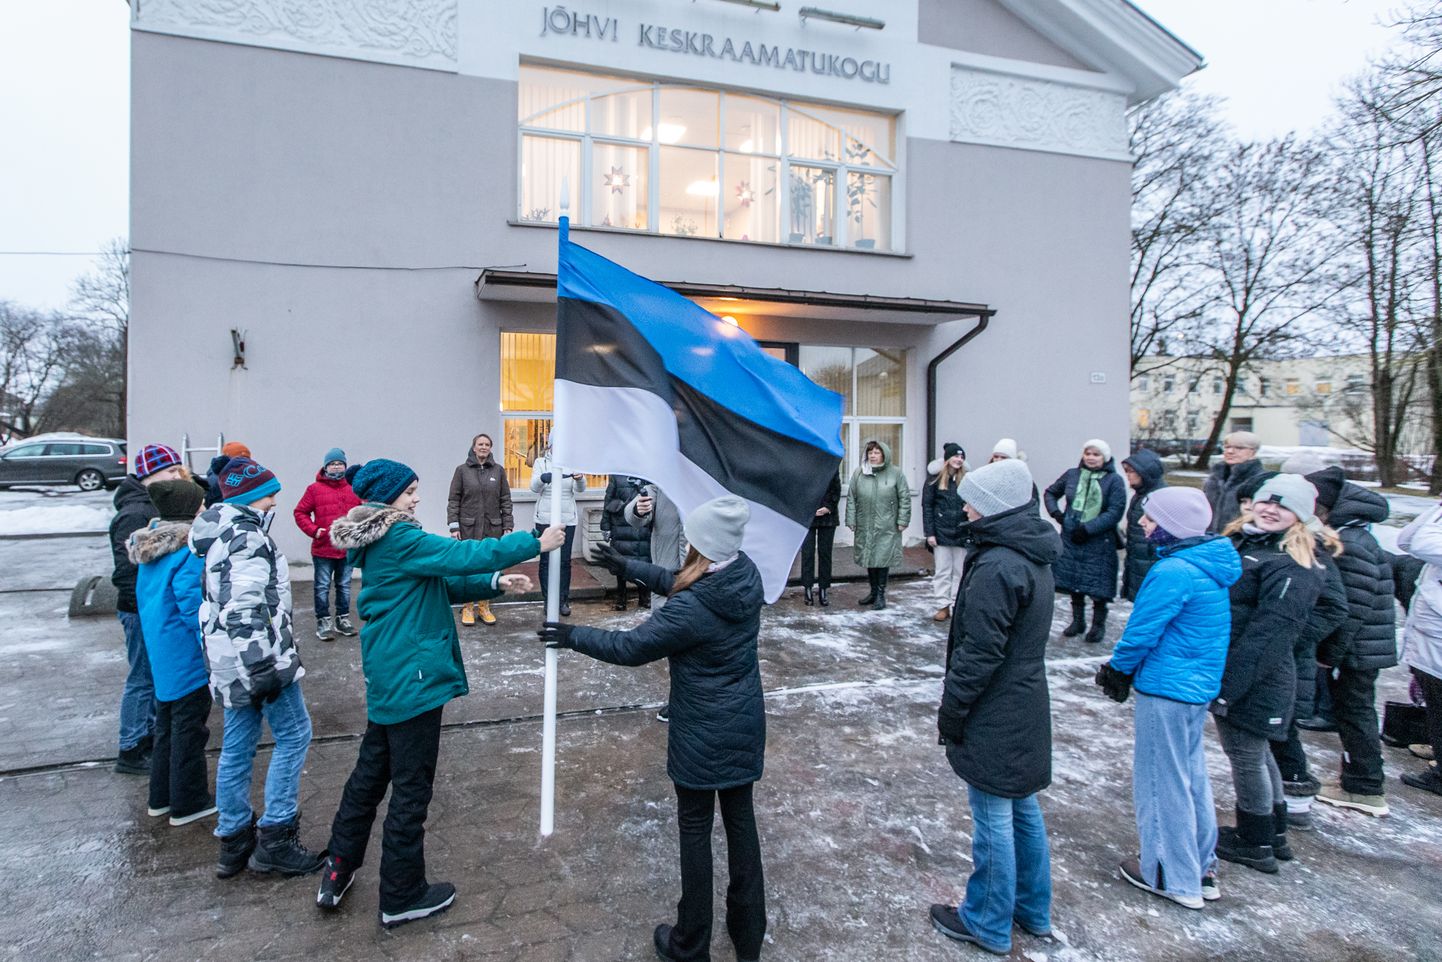 30. jaanuar on nüüdsest riiklikus tähtpäevade kalendris eesti kirjanduse päev, mis on ka lipupäev. Enne kui sinimustvalge Jõhvi keskraamatukogu hoonel lehvima hakkas, käis see Jõhvi põhikooli 6.a klassi õpilastel käest kätte, et uus tähtpäev läbi isikliku kogemuse paremini meelde jääks.